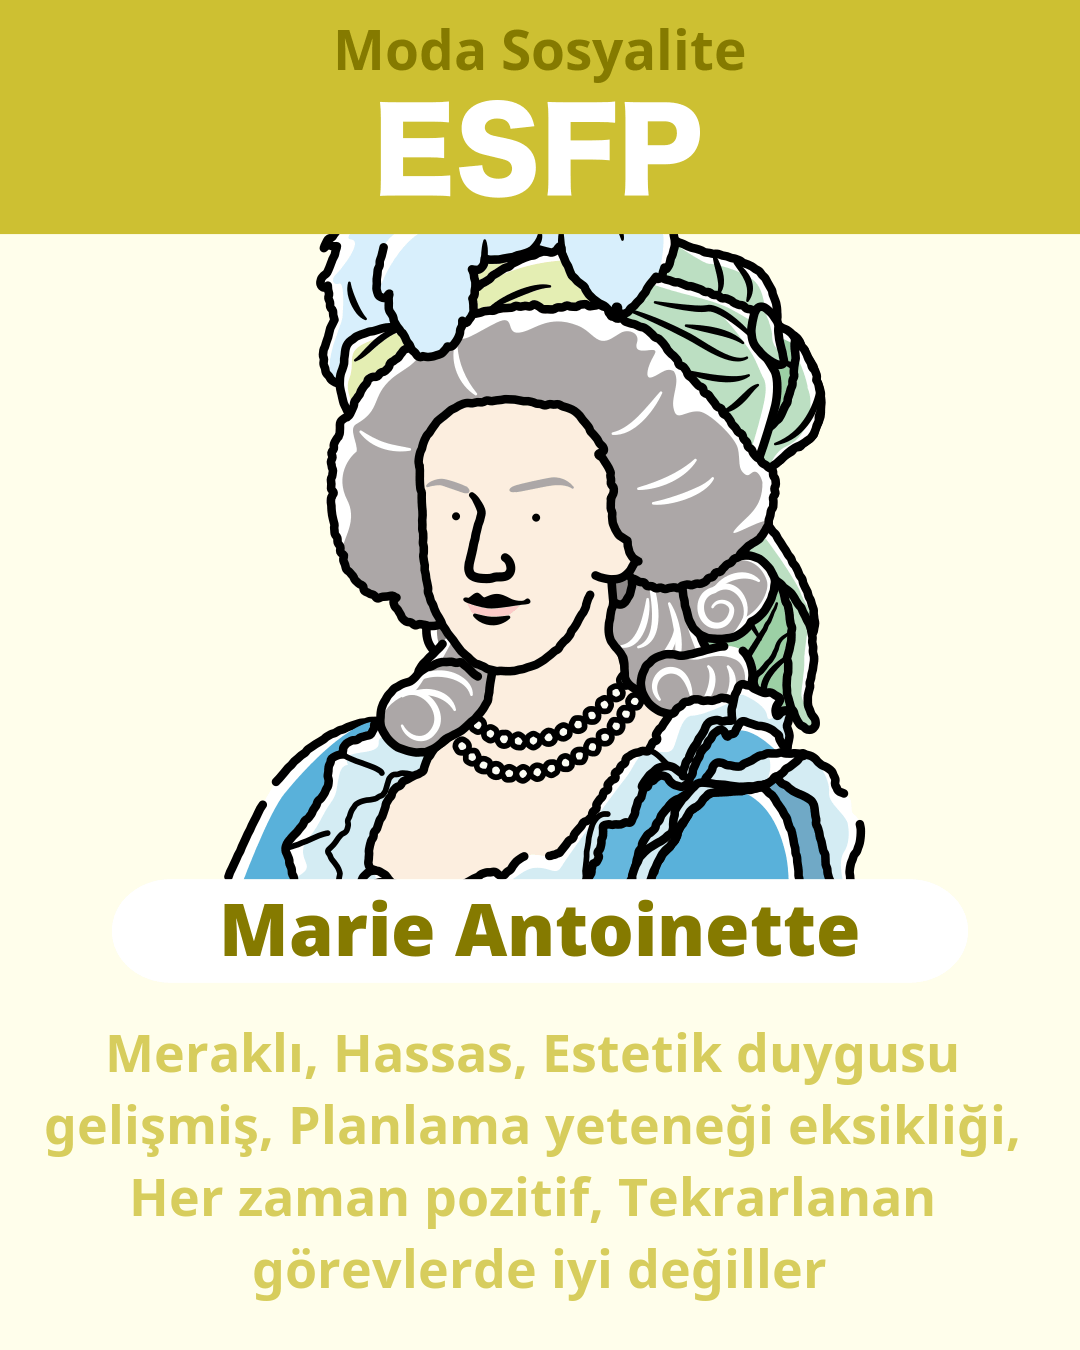 Marie Antoinette - ESFP